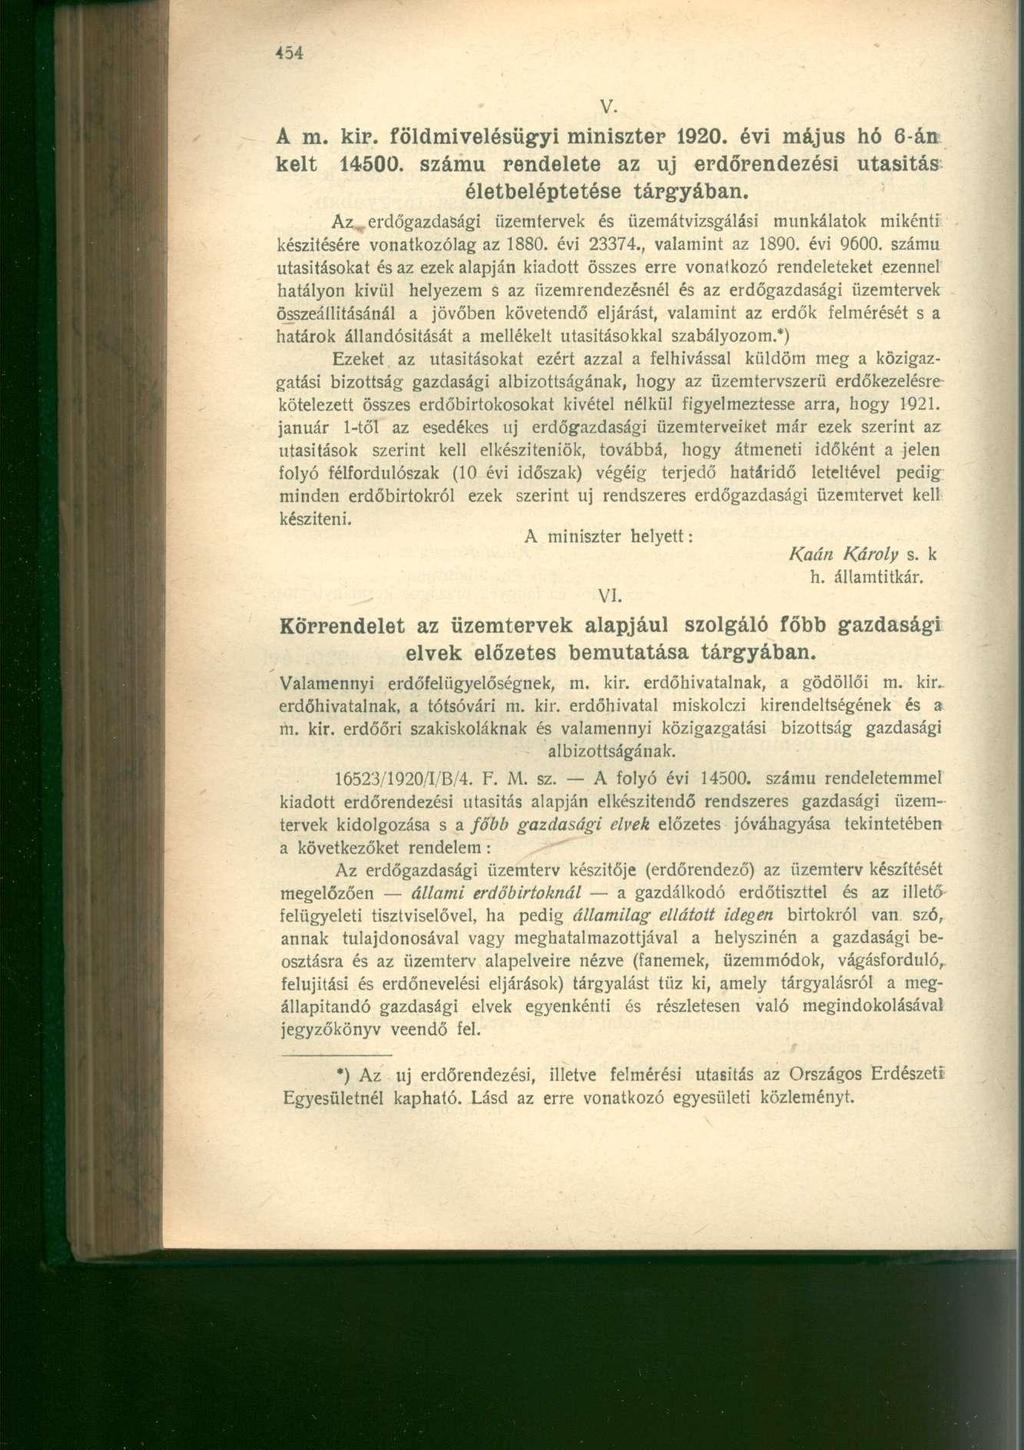 A m. kir. földmivelésügyi miniszter 1920. évi május hó 6-án kelt 14500. számú rendelete az uj erdőrendezési utasitás életbeléptetése tárgyában.